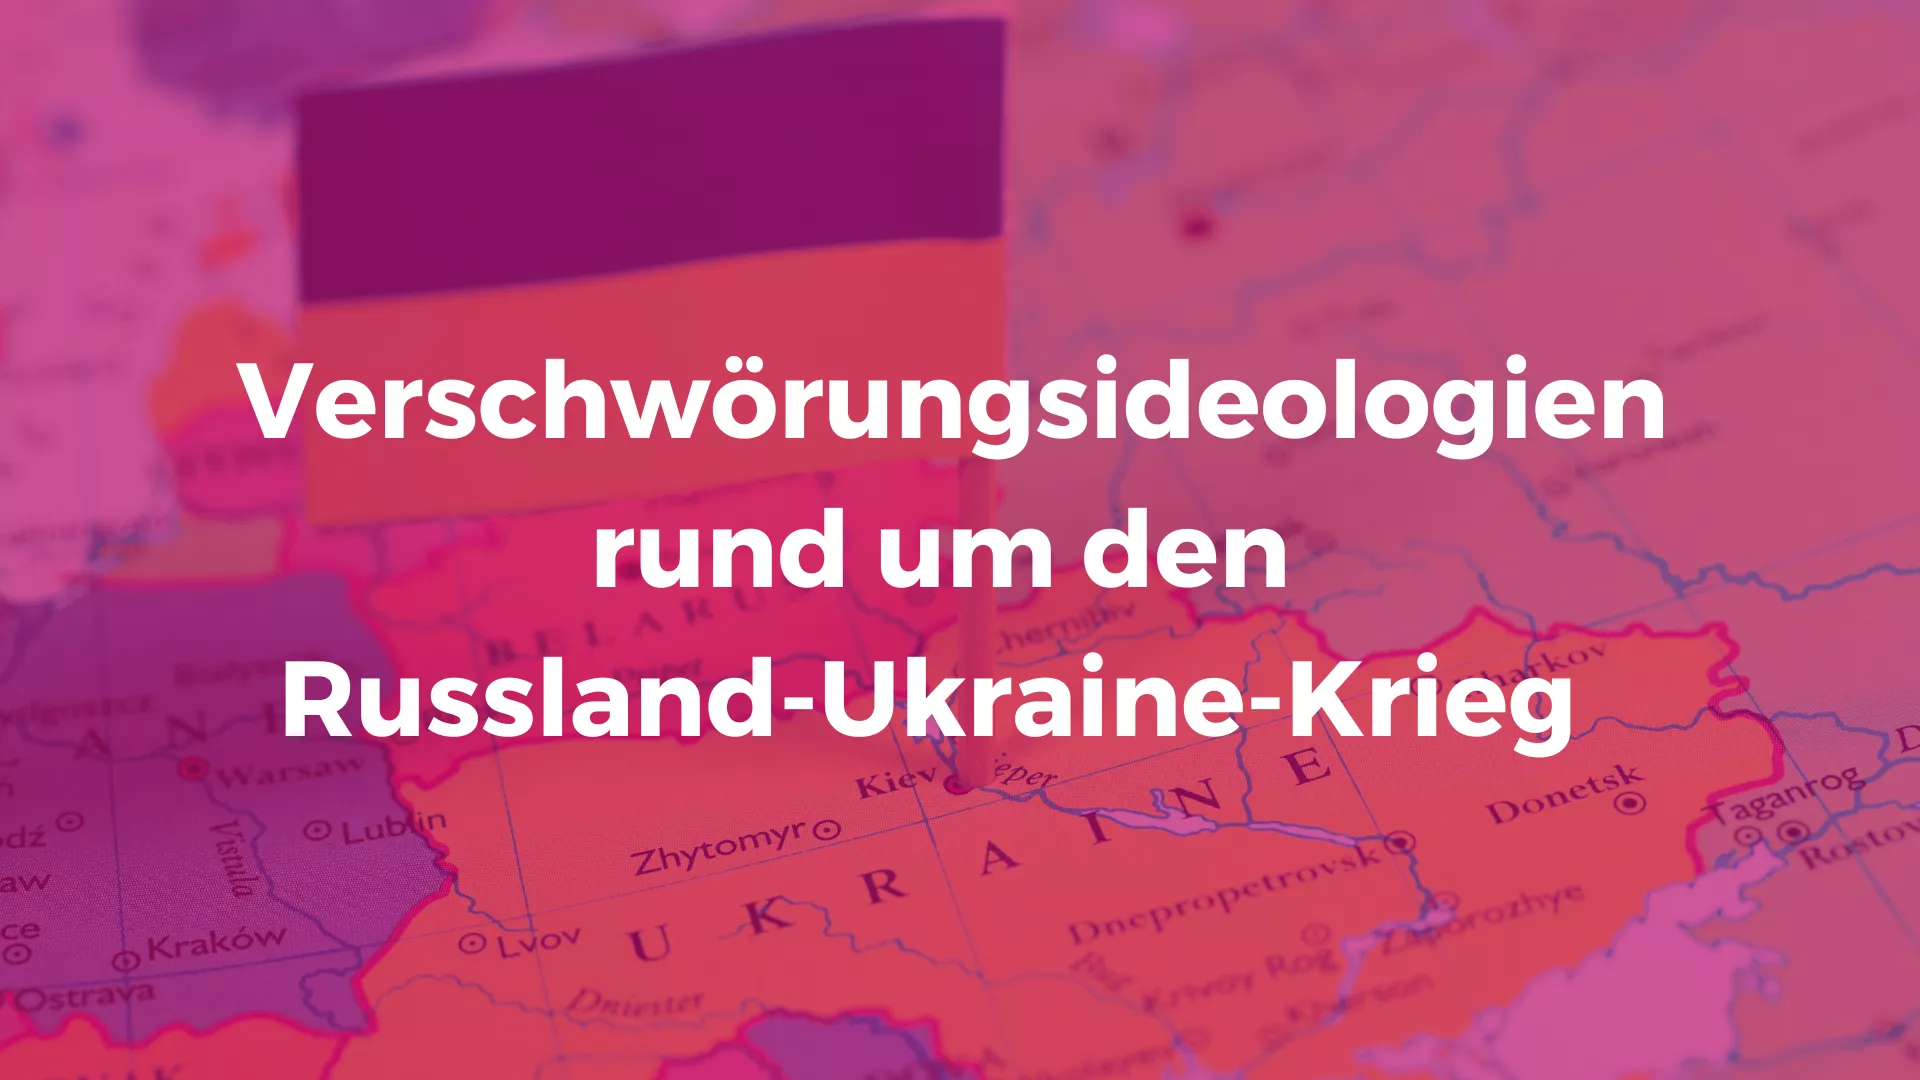 Verschwörungsideologien rund um den Russland-Ukraine-Krieg. Hinter blassem pinken Overlay sieht man eine Karte der Ukraine mit einer Stecknadel darin steckend, an der die ukrainische Fahne ist